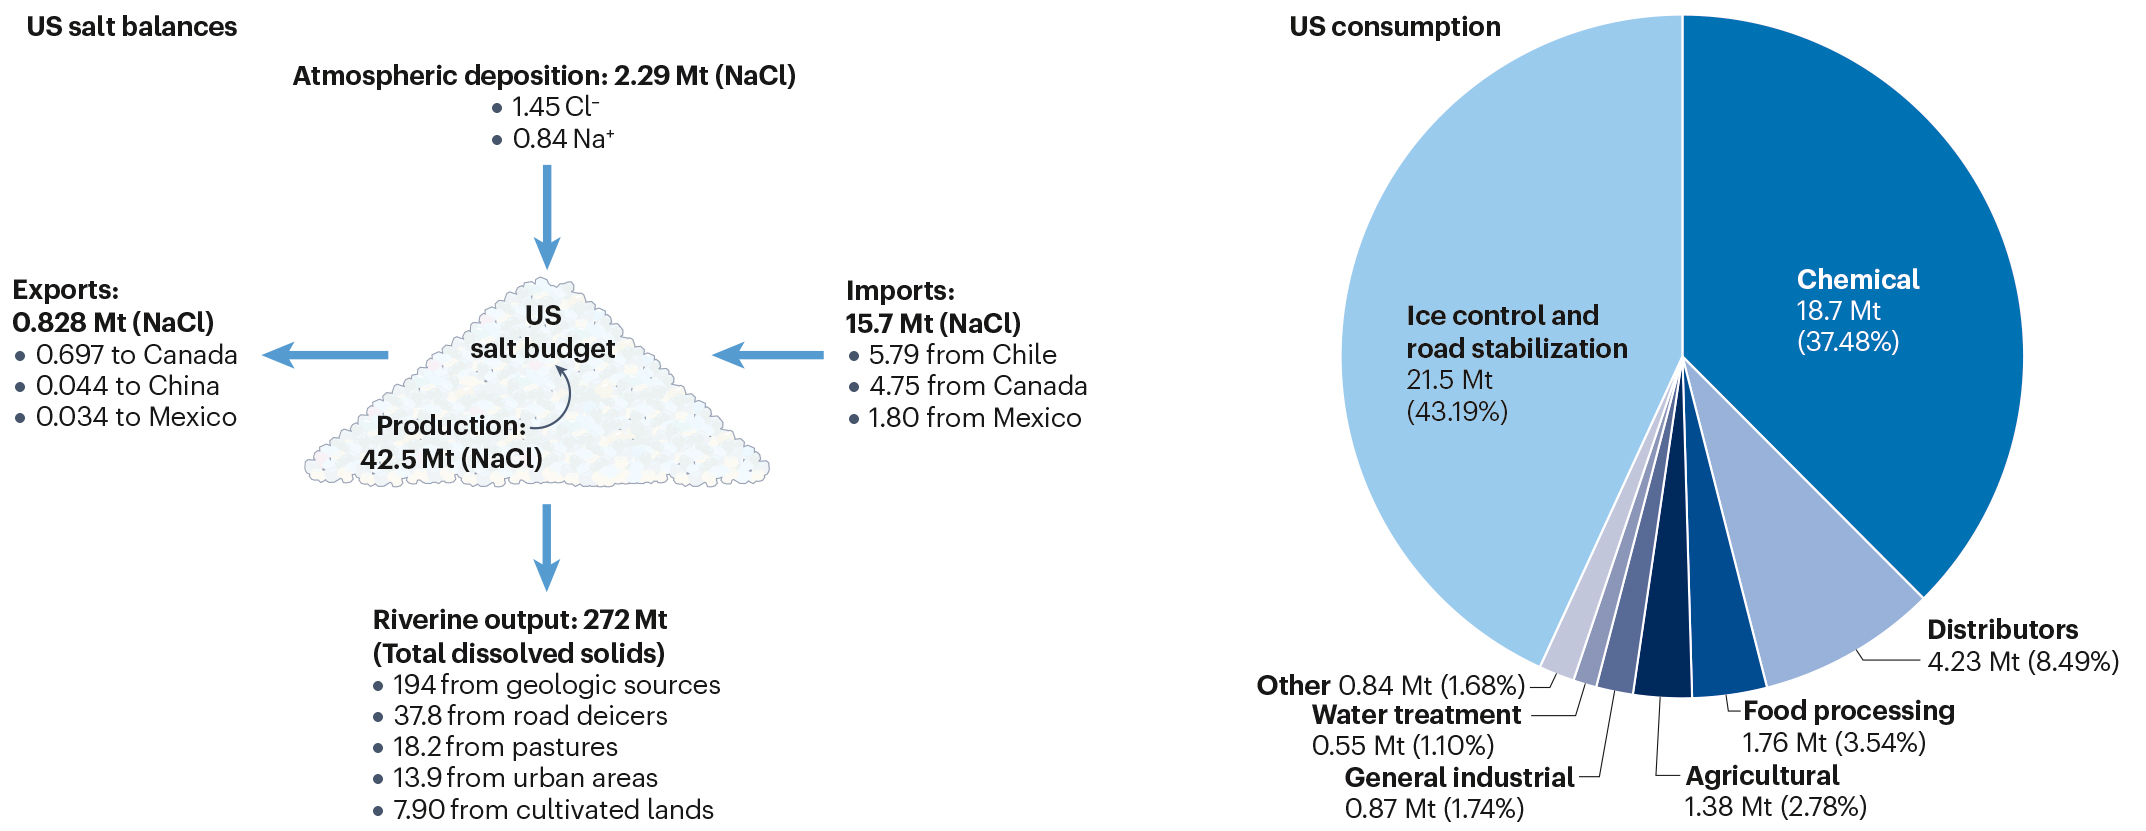 A graph showing the U.S. salt balances and consumption of salt